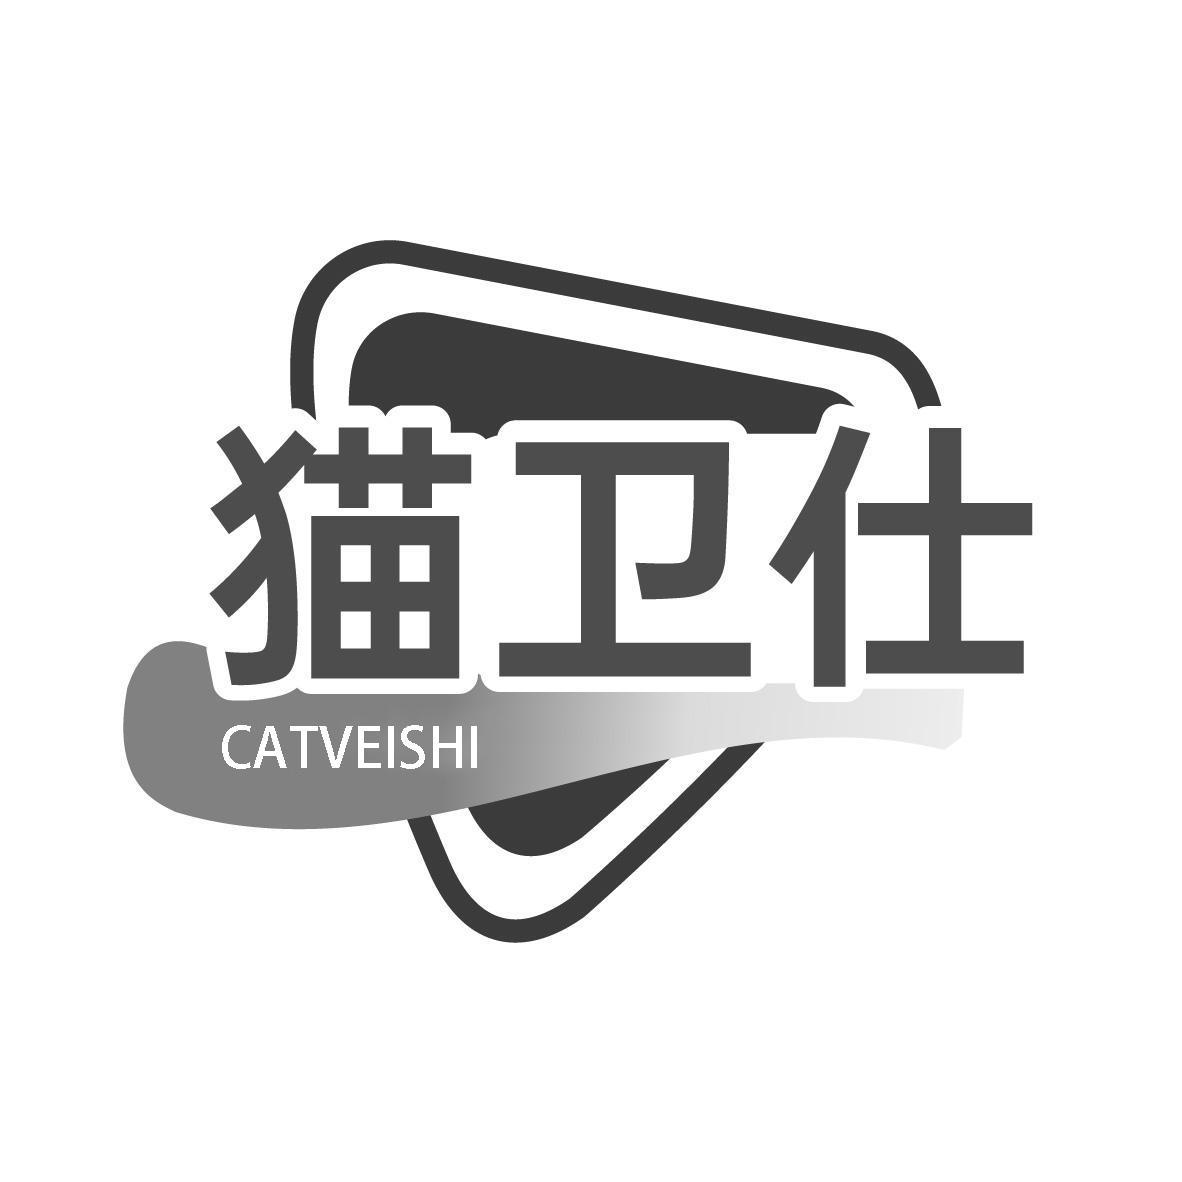 猫卫仕 CATVEISHI 商标公告